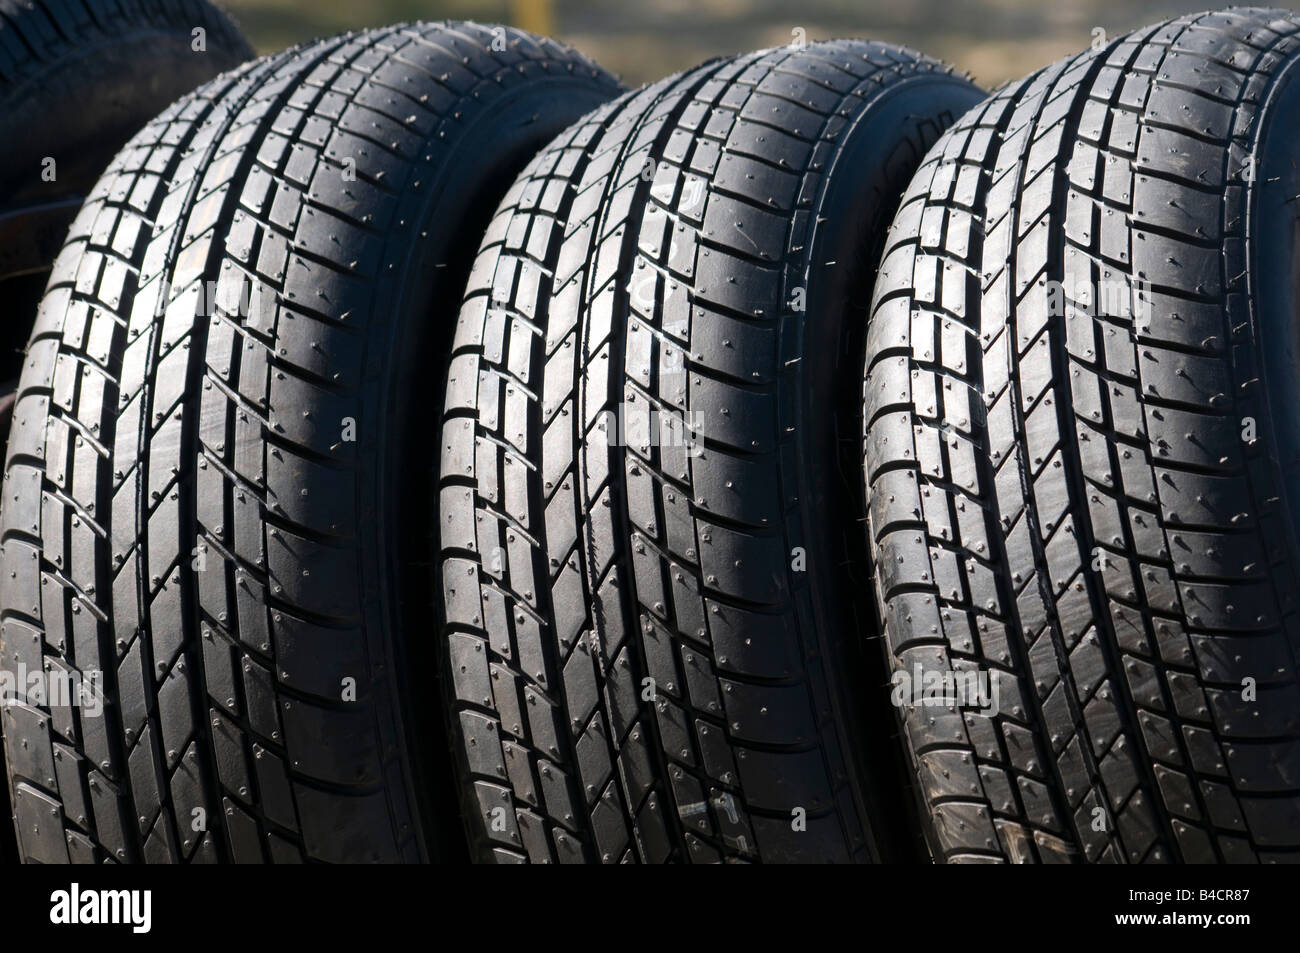 Brand new tyres Stock Photo